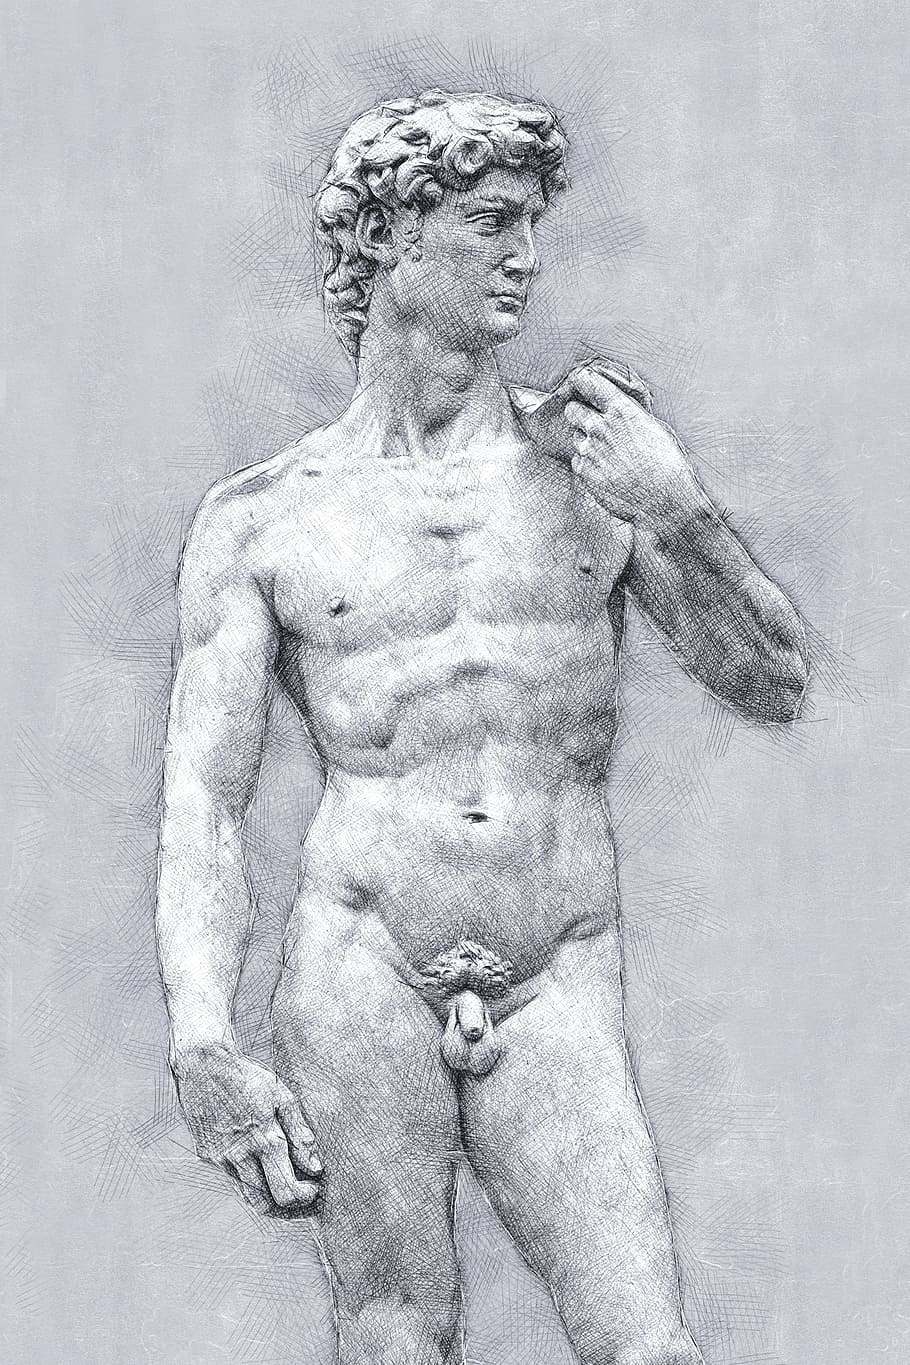 ミケランジェロ, デビッド, リバイバル, アート, 彫刻, 筋肉の構築, 上半身裸, 大人, 男性, 人体部分